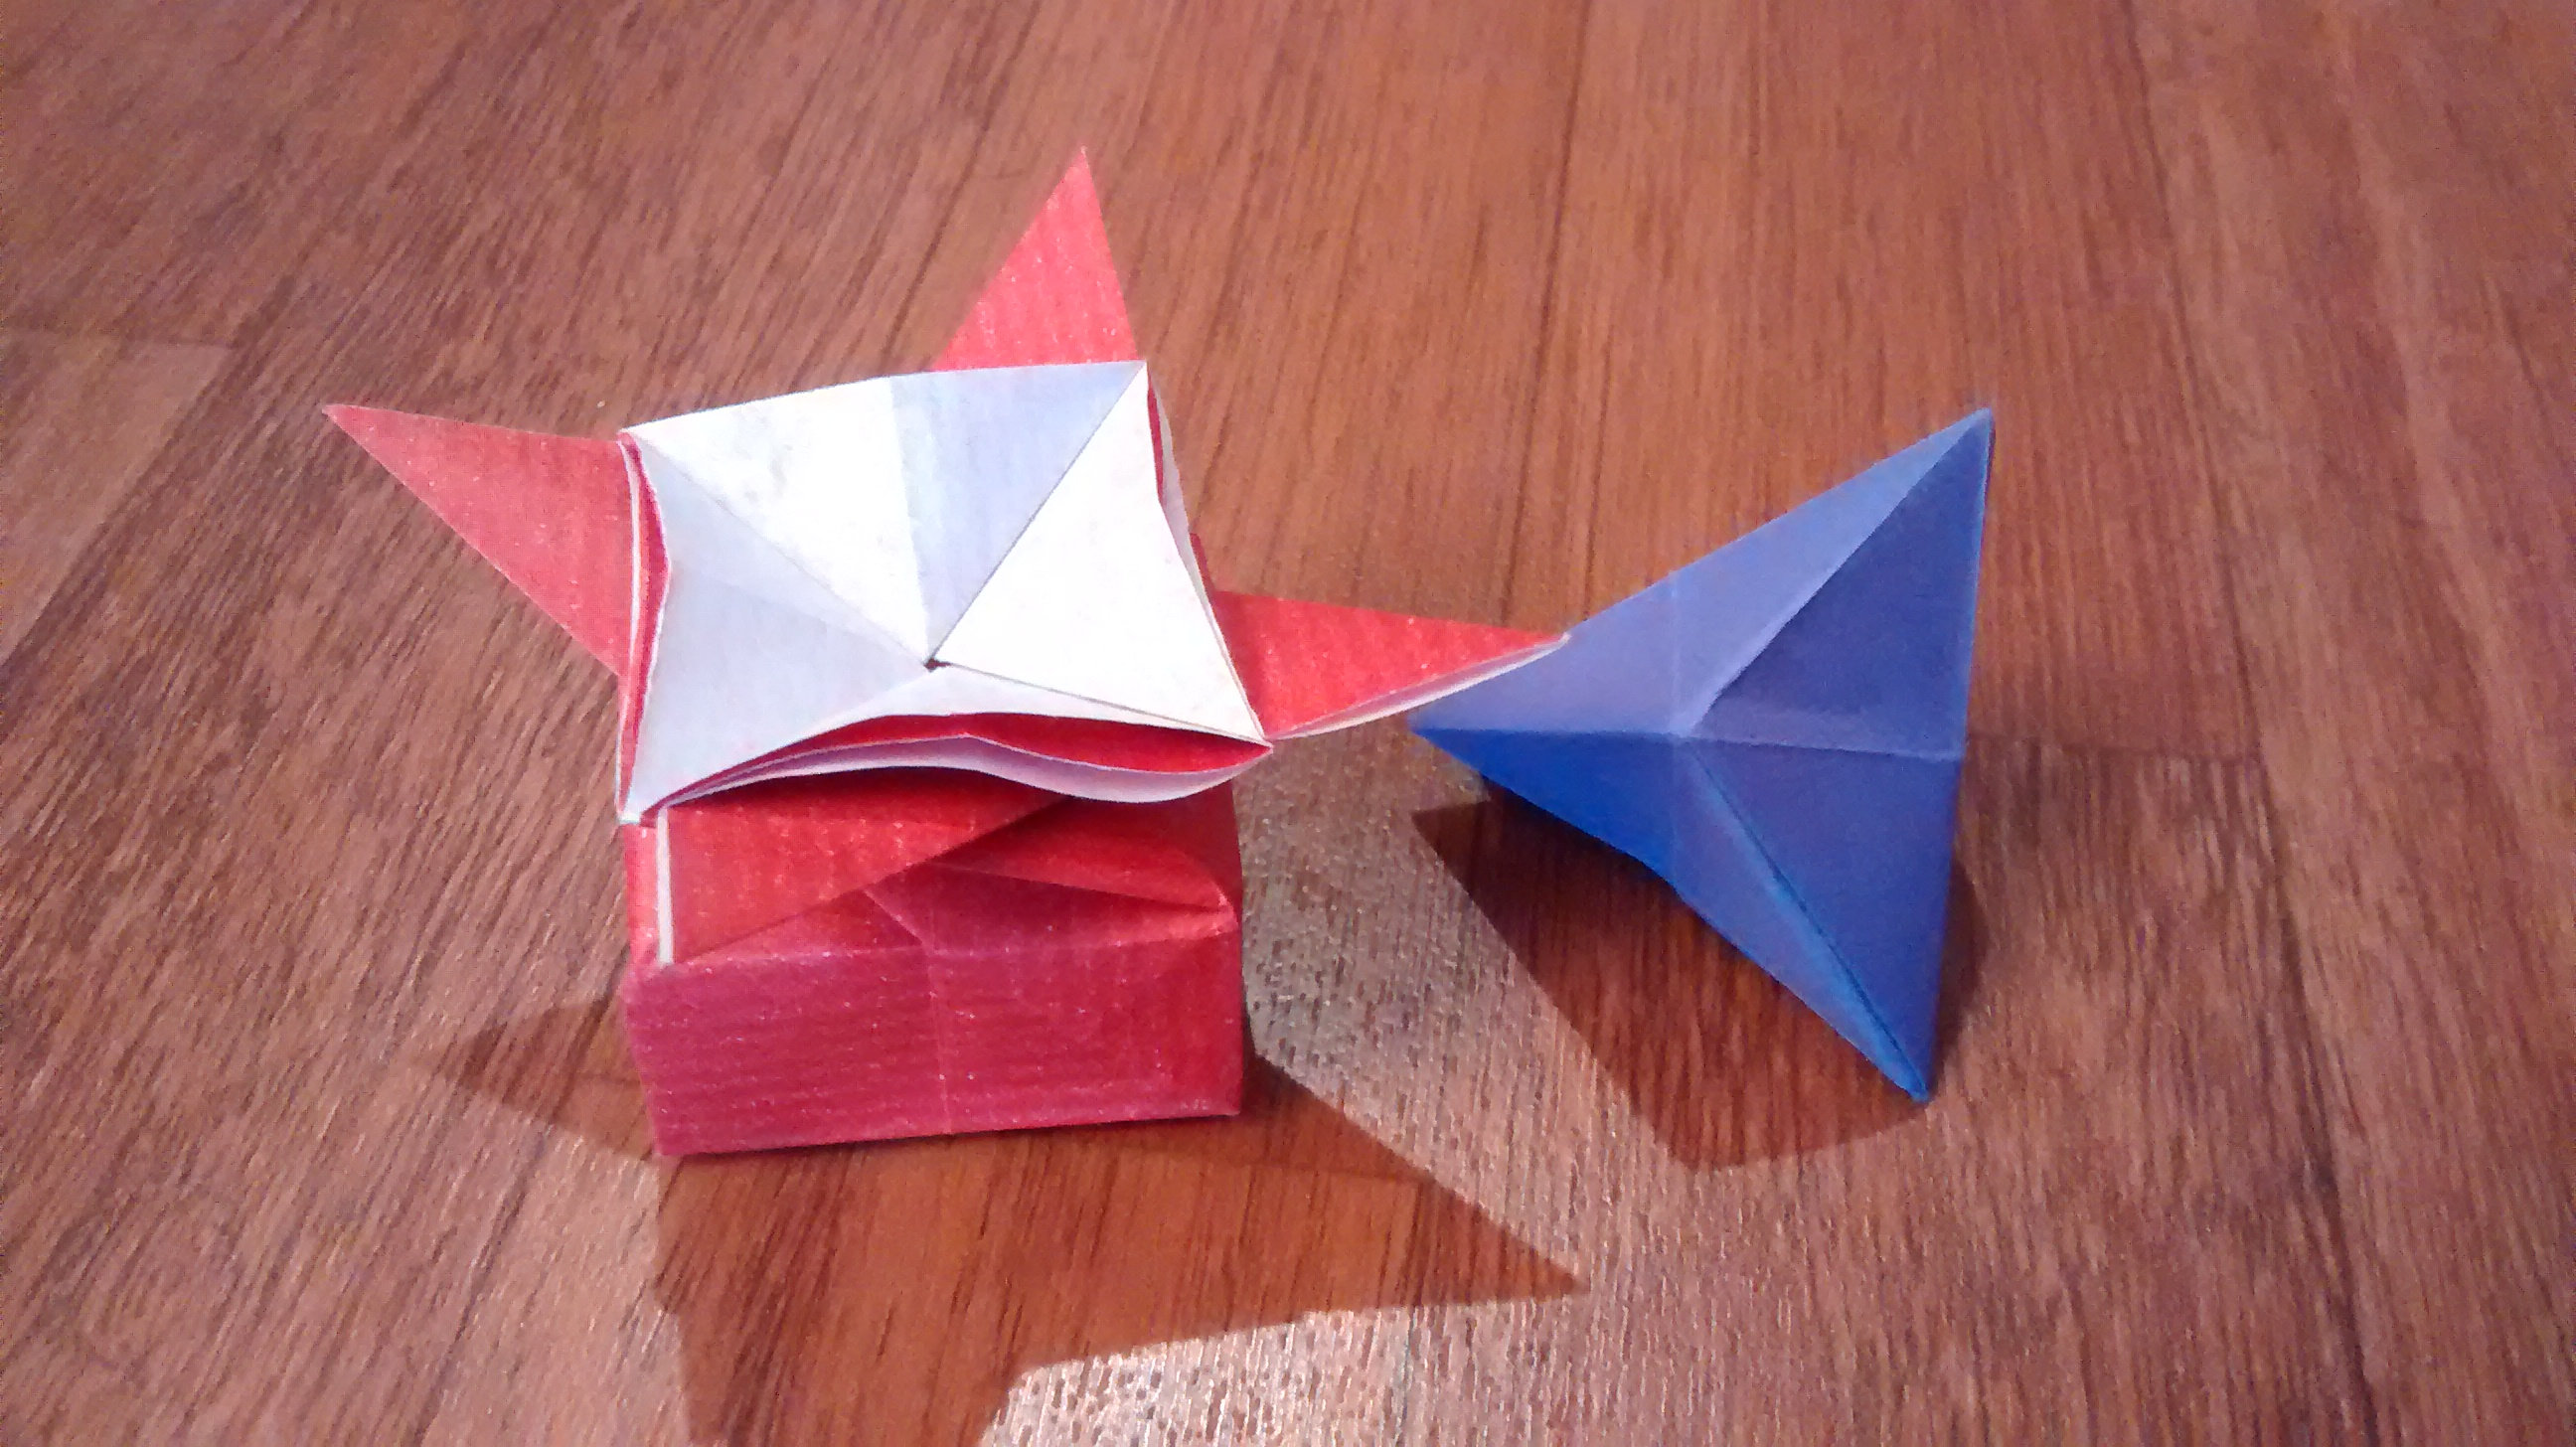 séances du vendredi avec le groupe origami de Limoges Bfkf